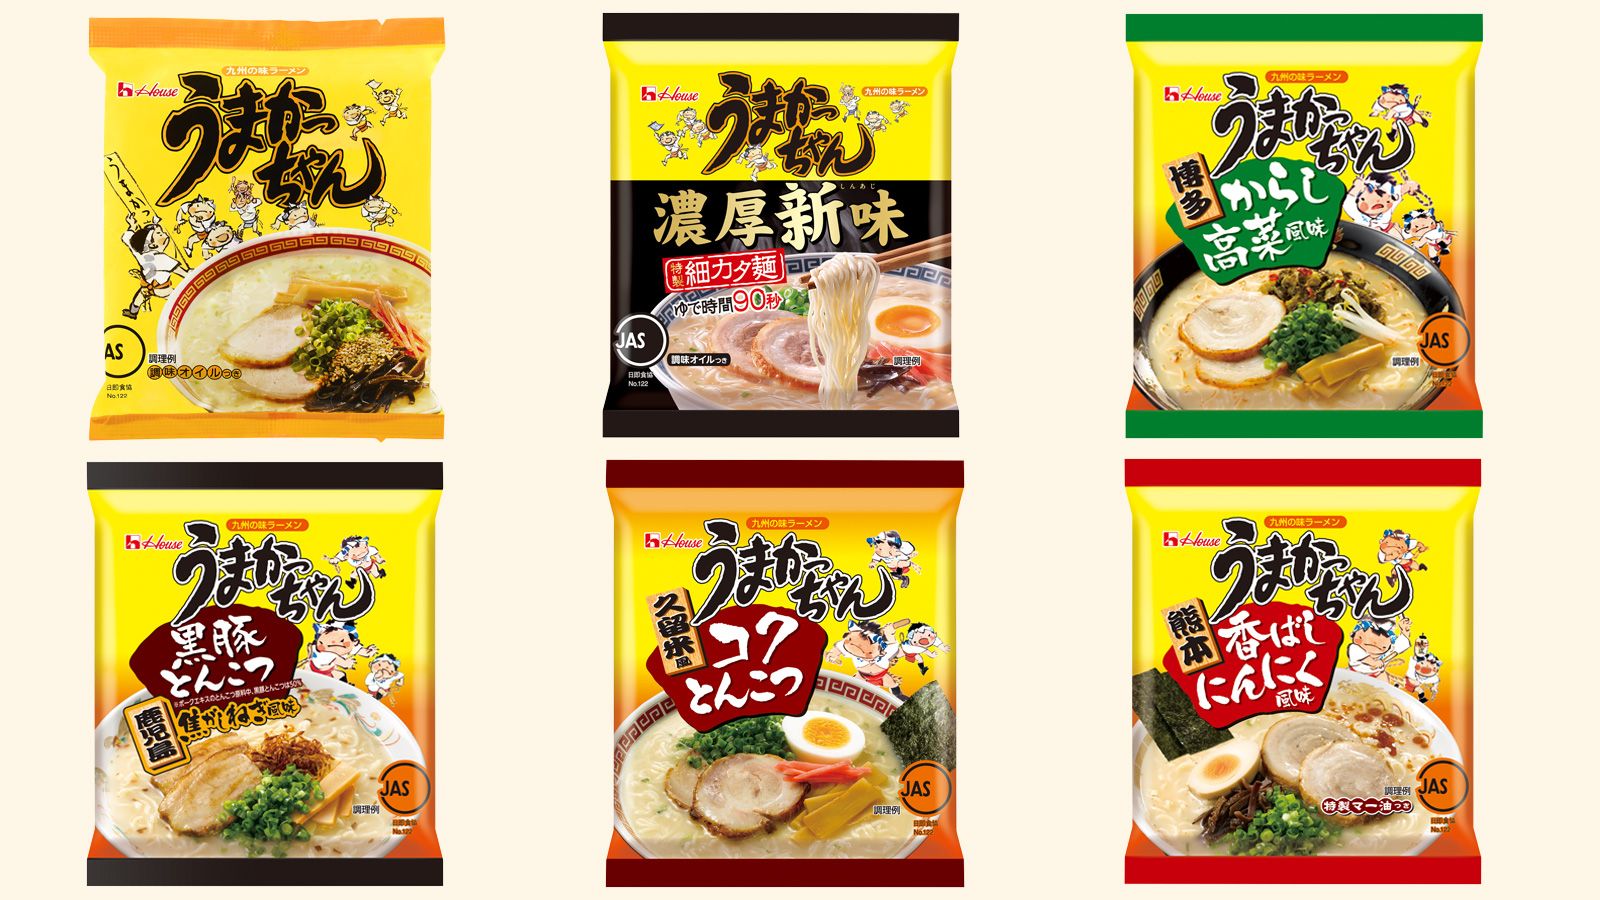 うまかっちゃん が九州人の定番となった理由 食品 東洋経済オンライン 経済ニュースの新基準